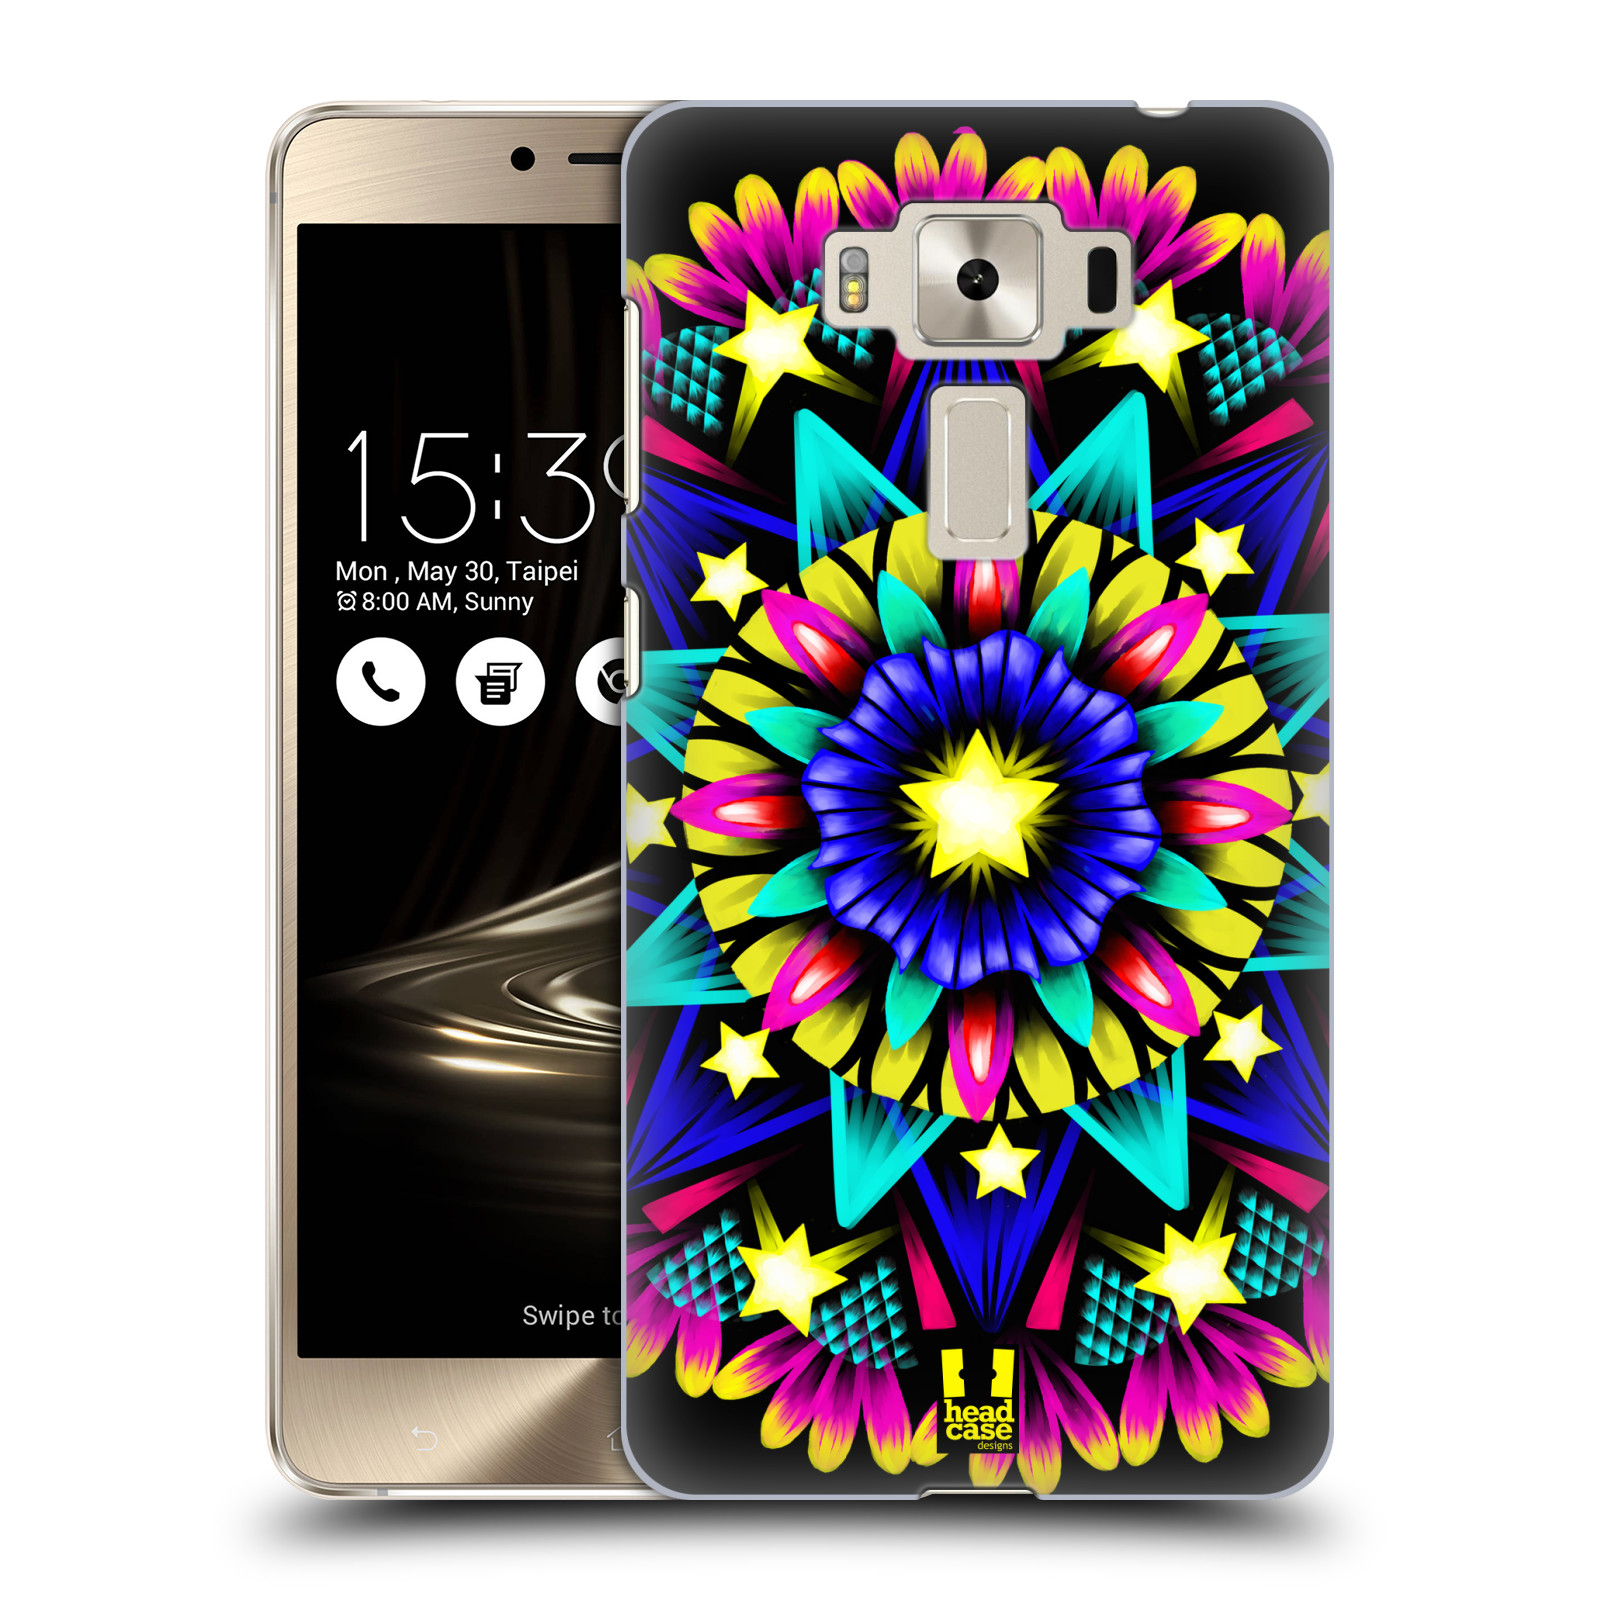 HEAD CASE plastový obal na mobil Asus Zenfone 3 DELUXE ZS550KL vzor Indie Mandala kaleidoskop barevný vzor HVĚZDA